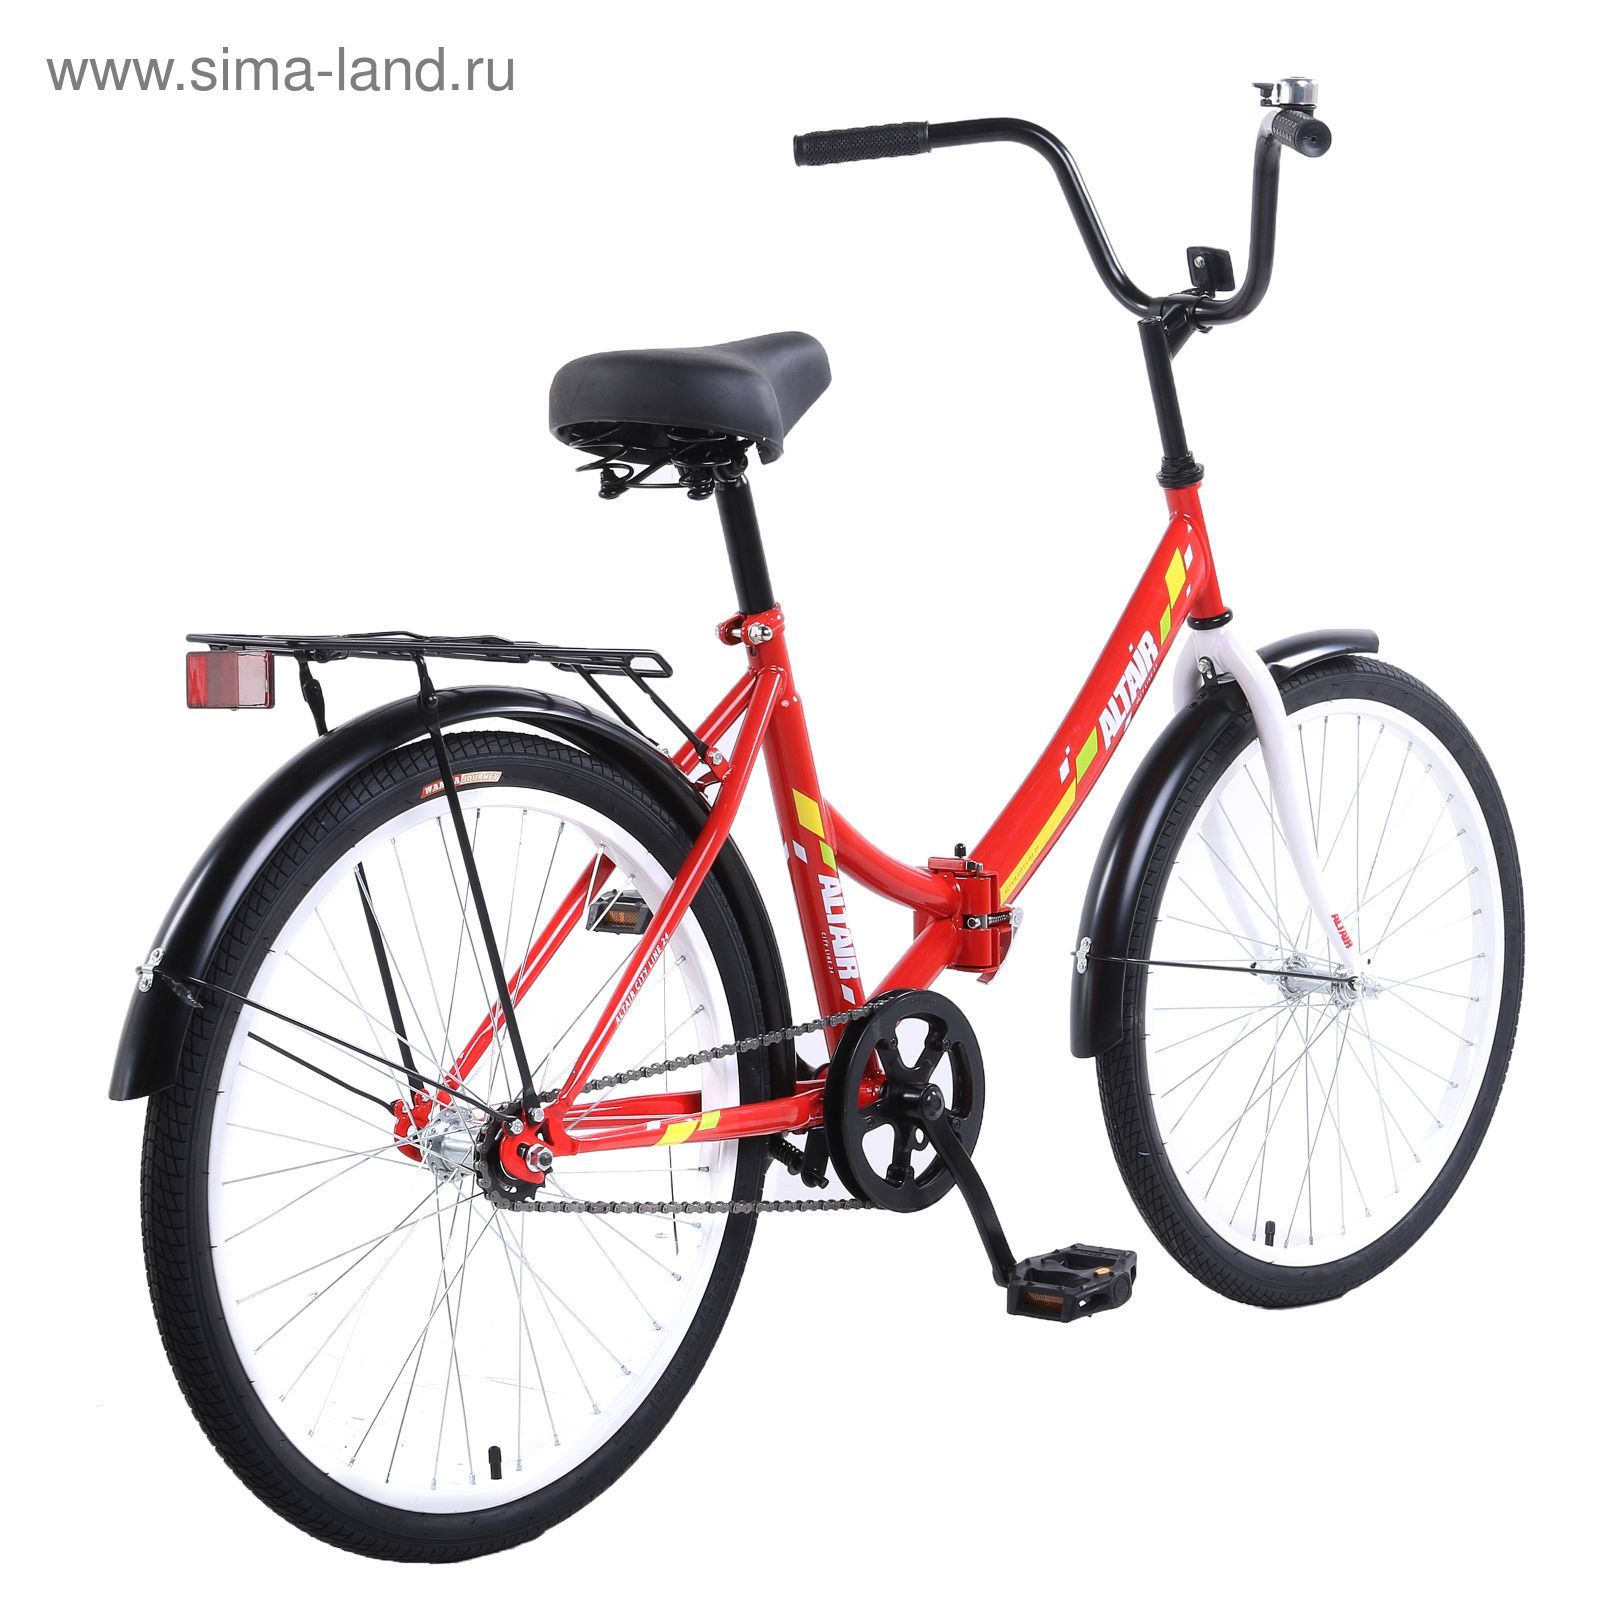 Велосипед 24" Altair City 24, 2017, цвет красный, размер 16"